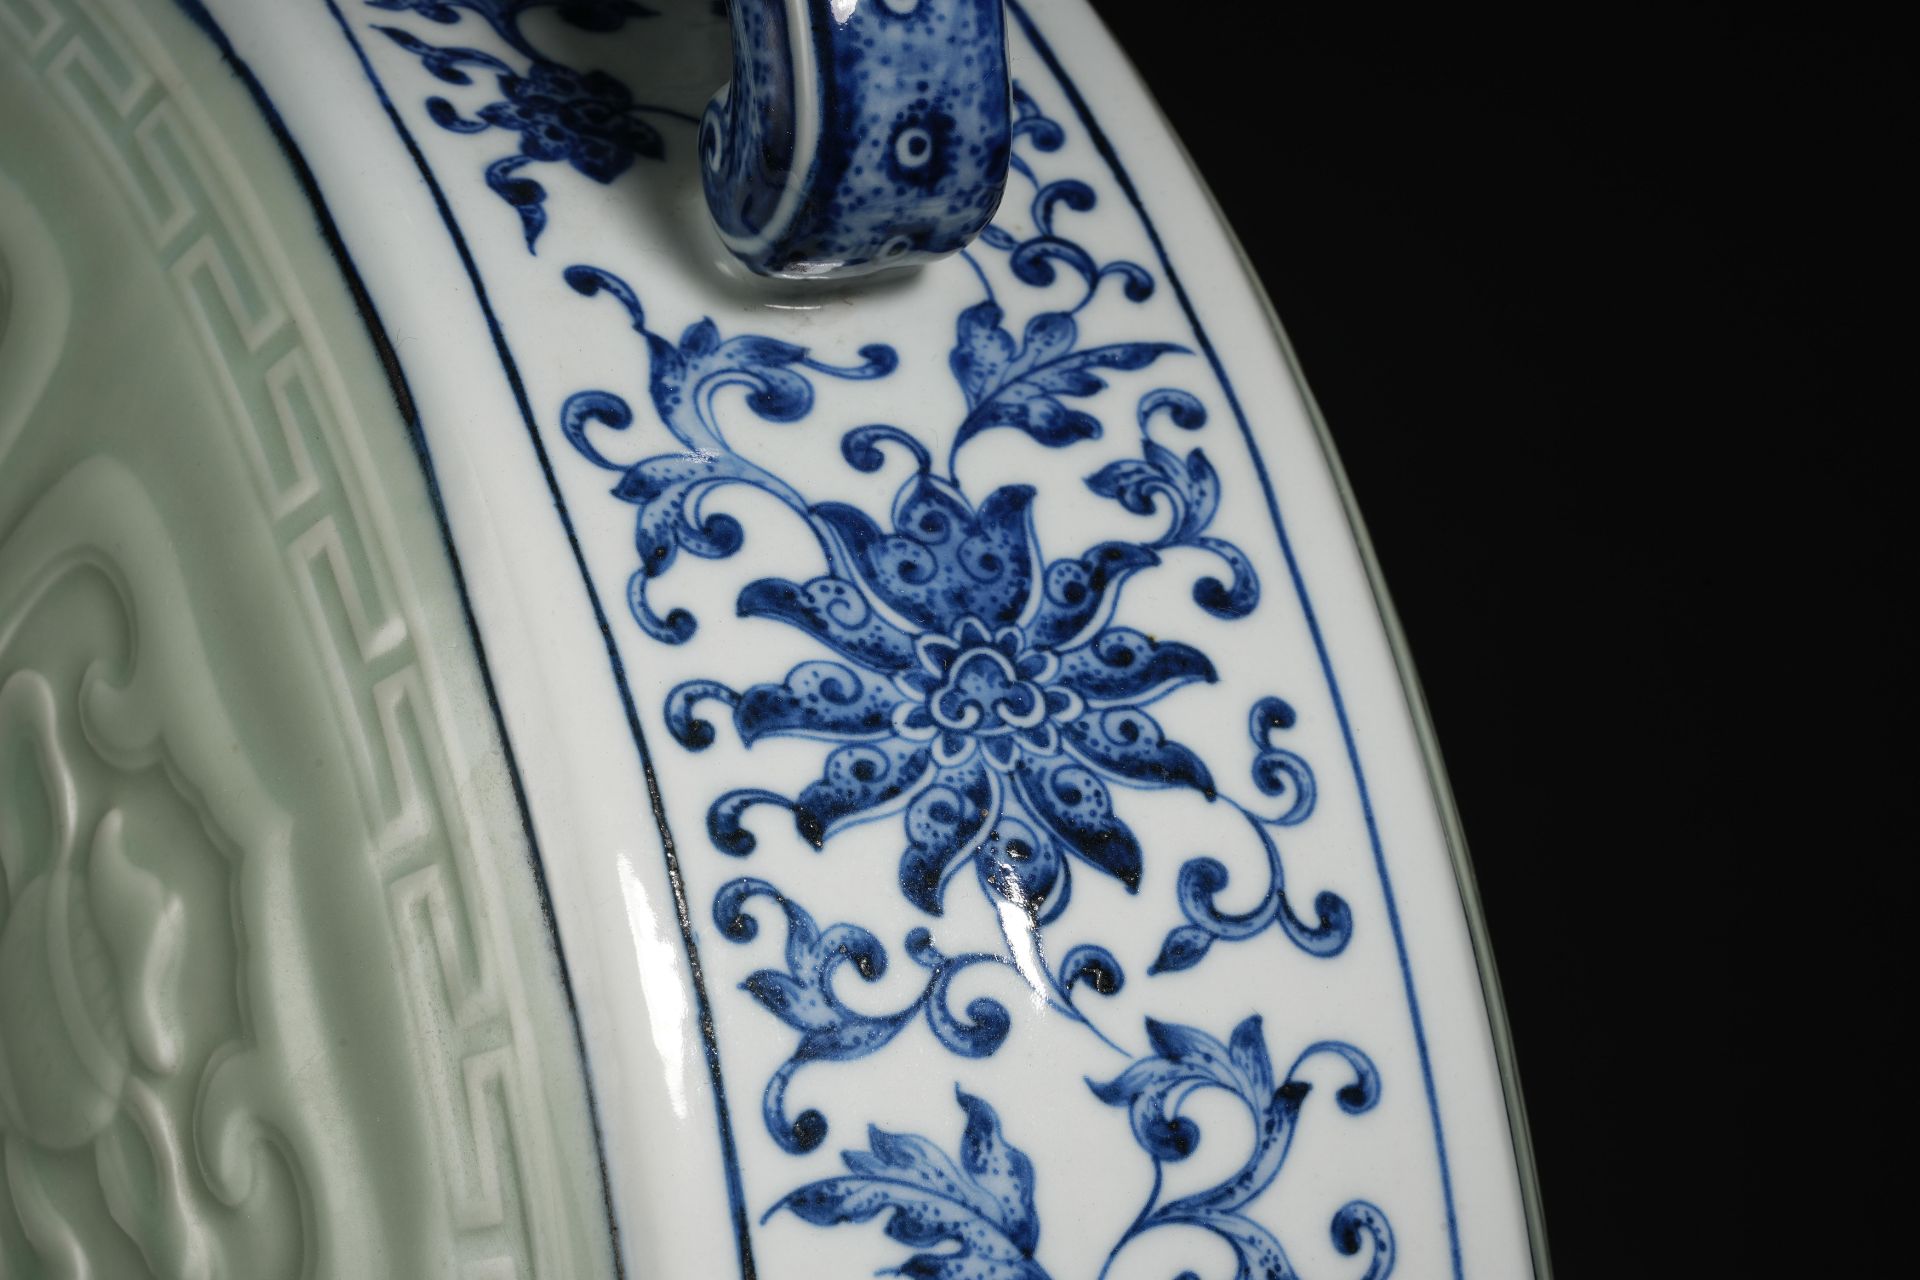 A Chinese Underglaze Blue and Celadon Glaze Moon Flask Vase - Image 8 of 14